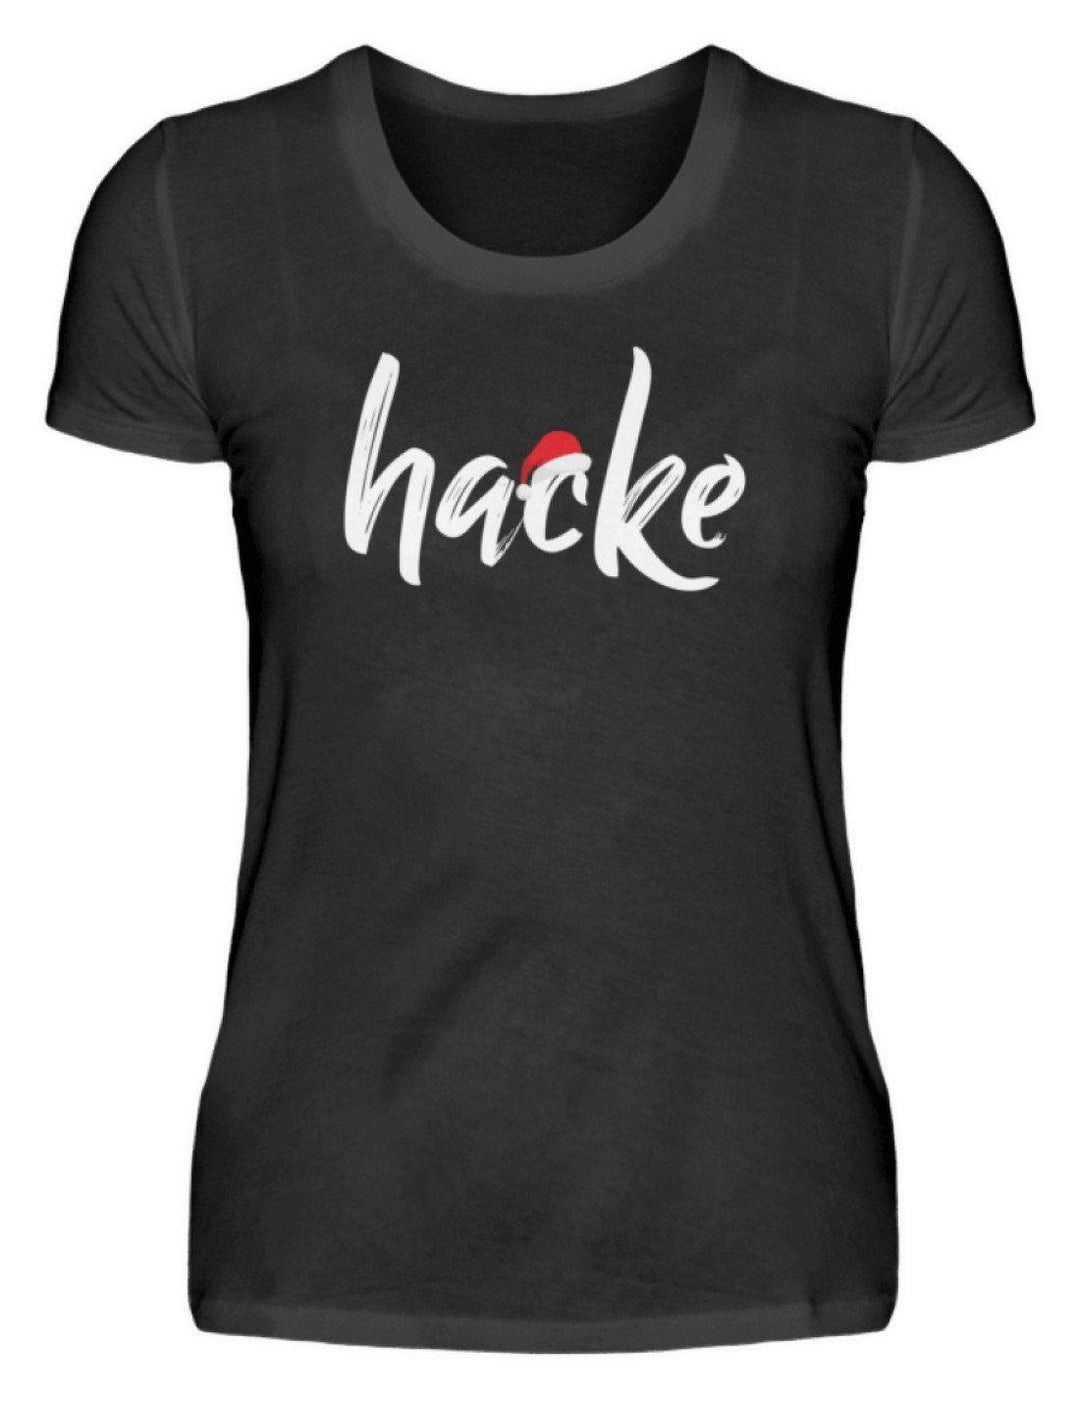 Hacke - Hacke Dicht - Words on Shirts  - Damenshirt - Words on Shirts Sag es mit dem Mittelfinger Shirts Hoodies Sweatshirt Taschen Gymsack Spruch Sprüche Statement